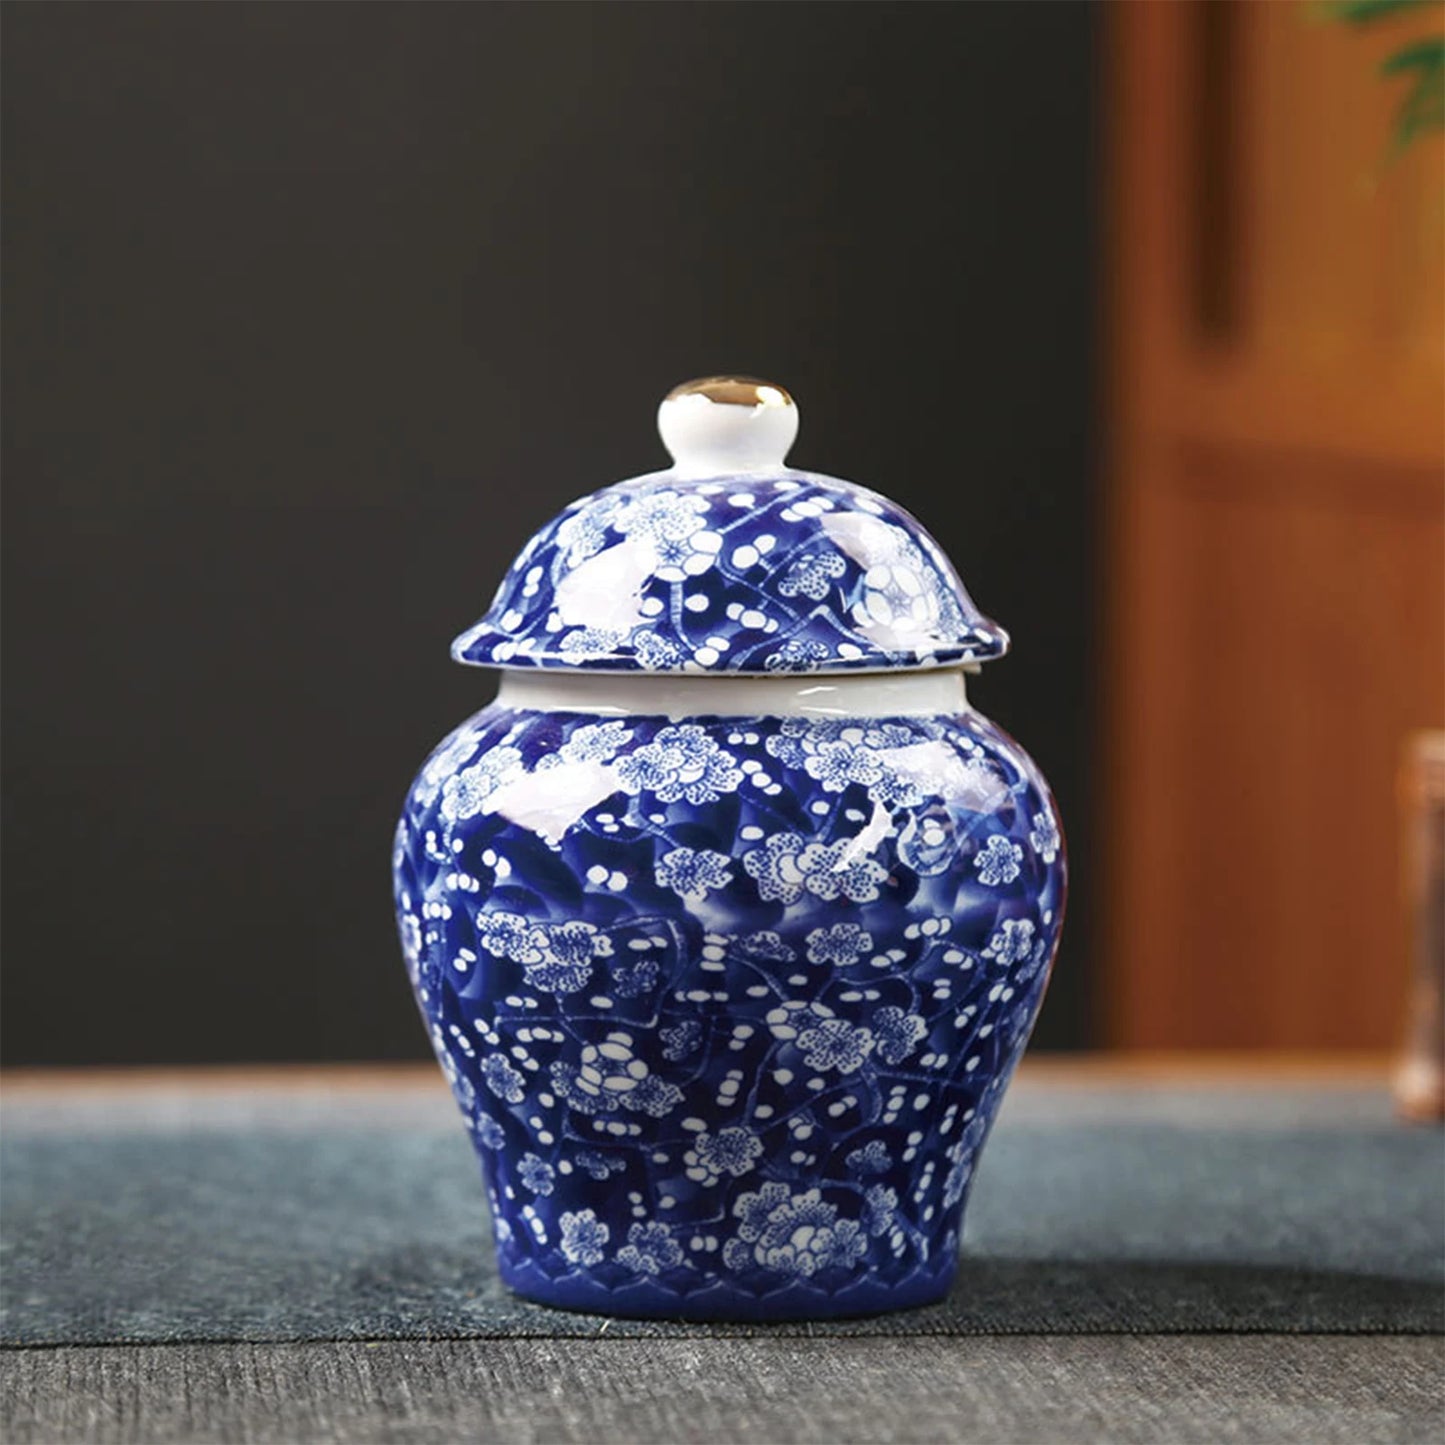 Alter chinesischer Stil, kreatives Porzellan-Ingwerglas, dekorative Keramik-Blumenvase, Tischdekoration, Blumenarrangement für Café